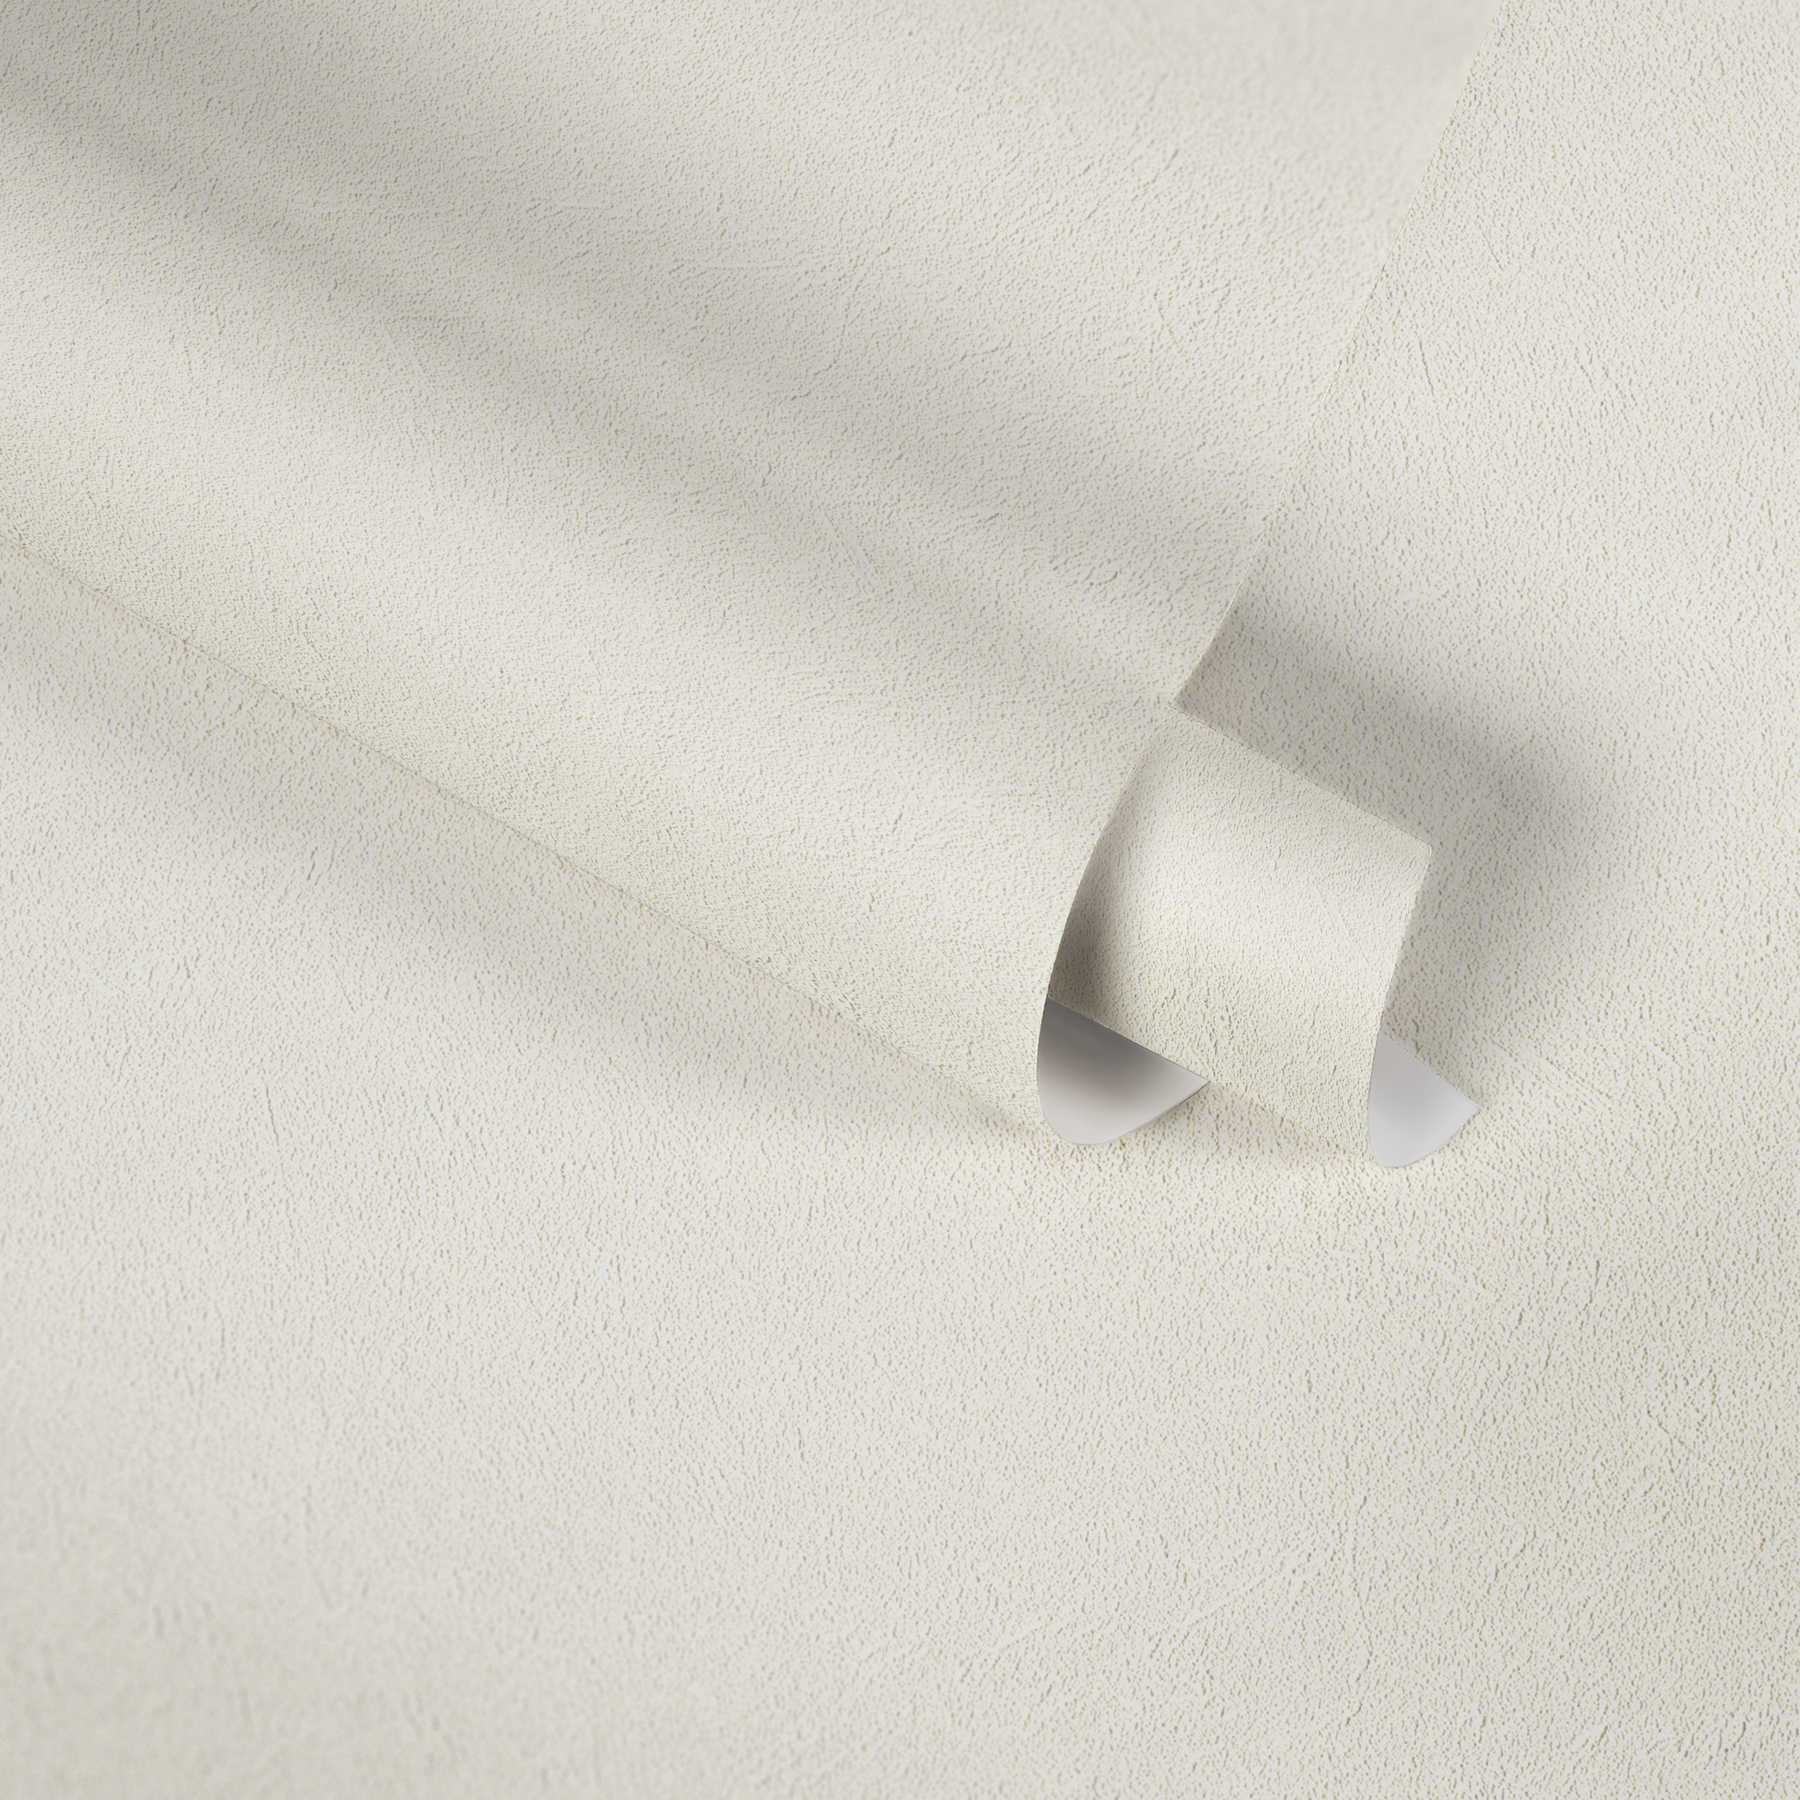             Einfarbige Tapete Creme-Weiß mit dezentem Strukturdesign
        